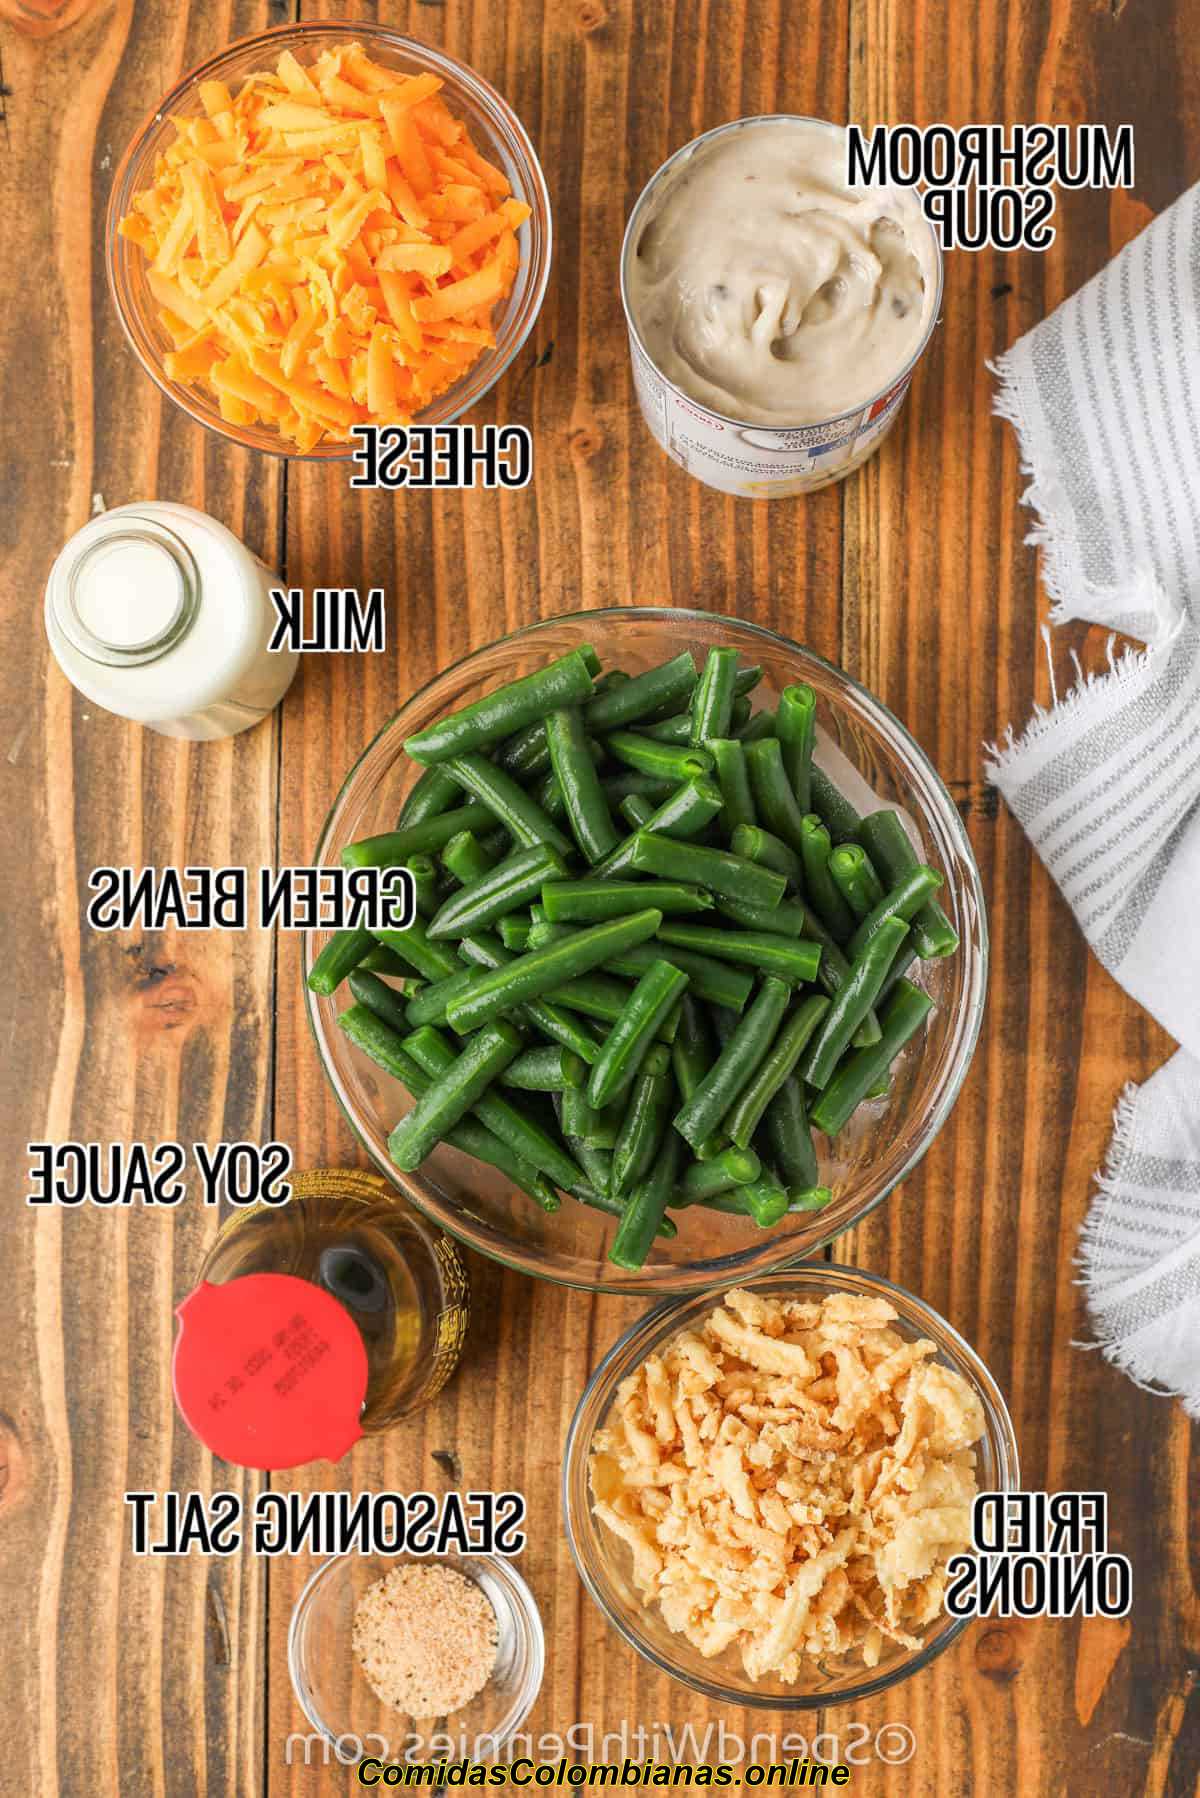 Ingredientes de cazuela de judías verdes en tazones con etiquetas